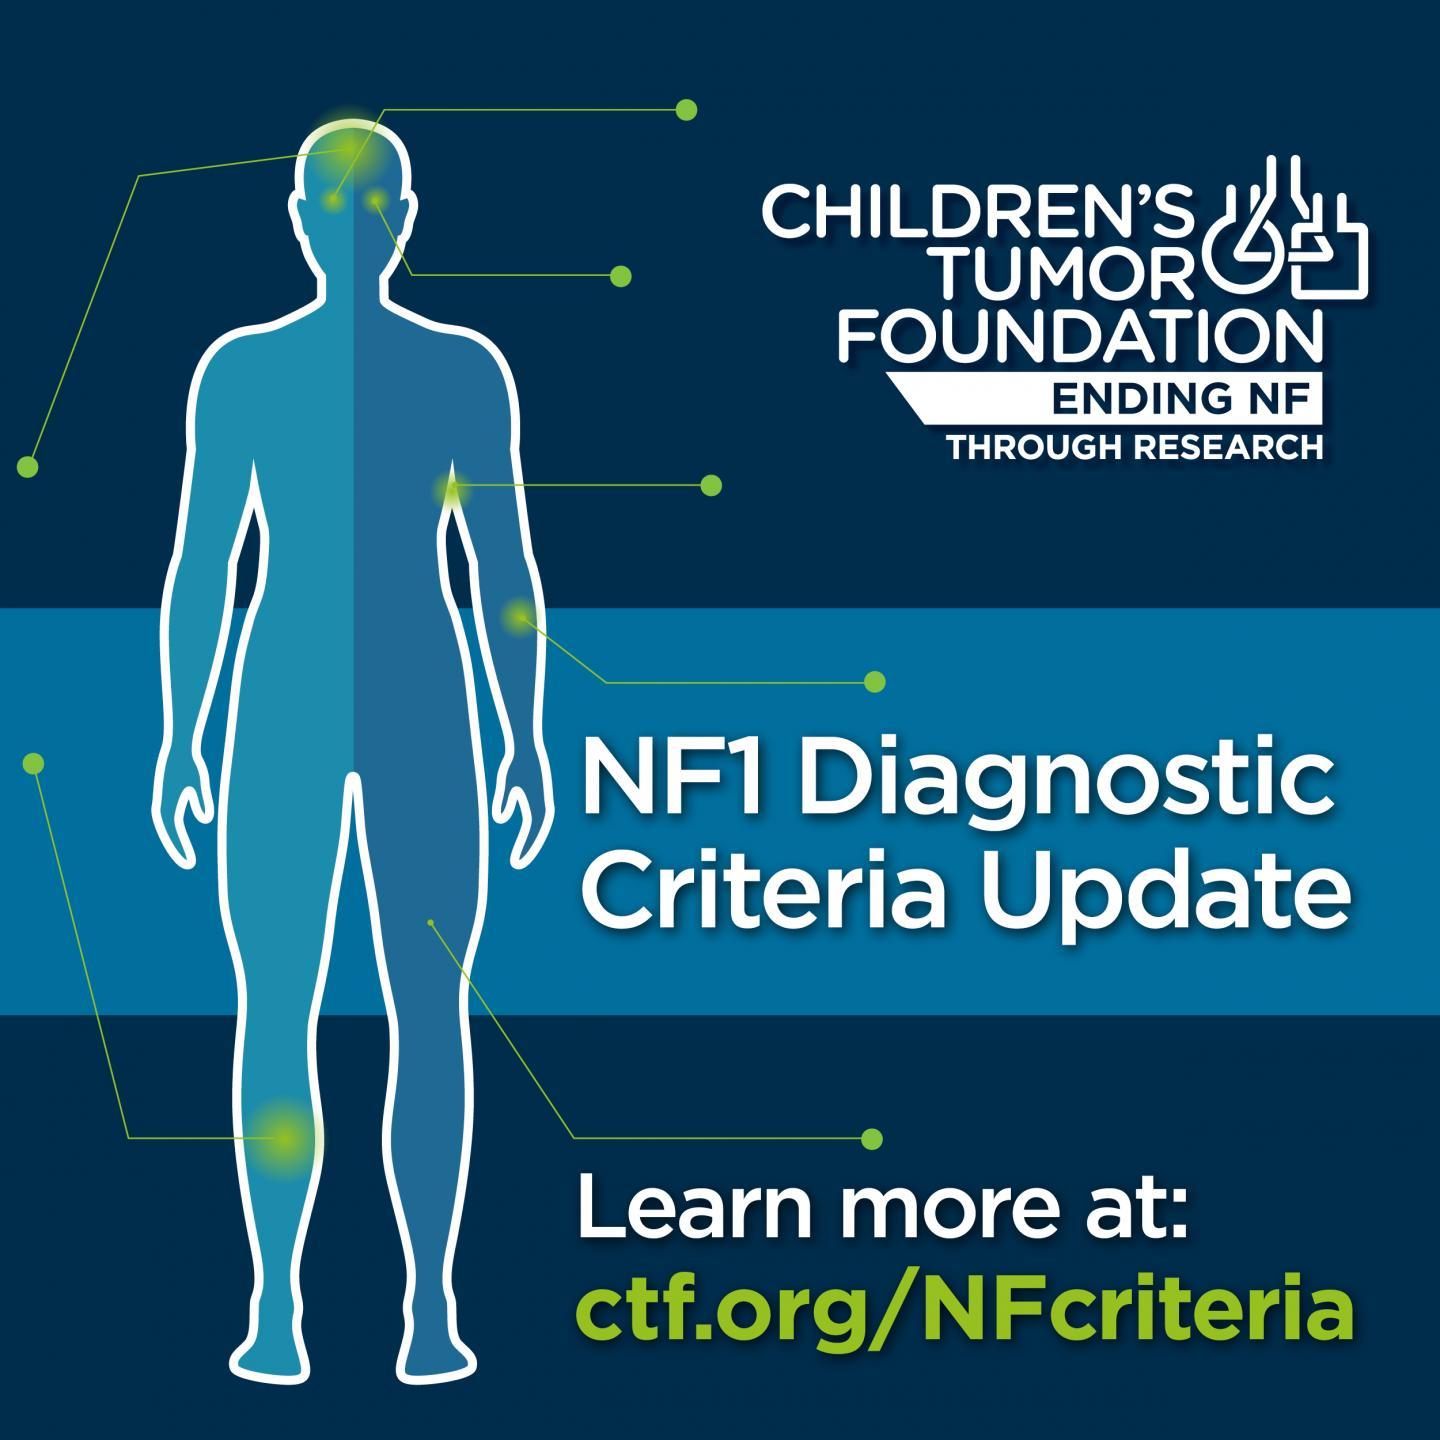 儿童肿瘤基金会宣布修订NF1诊断标准